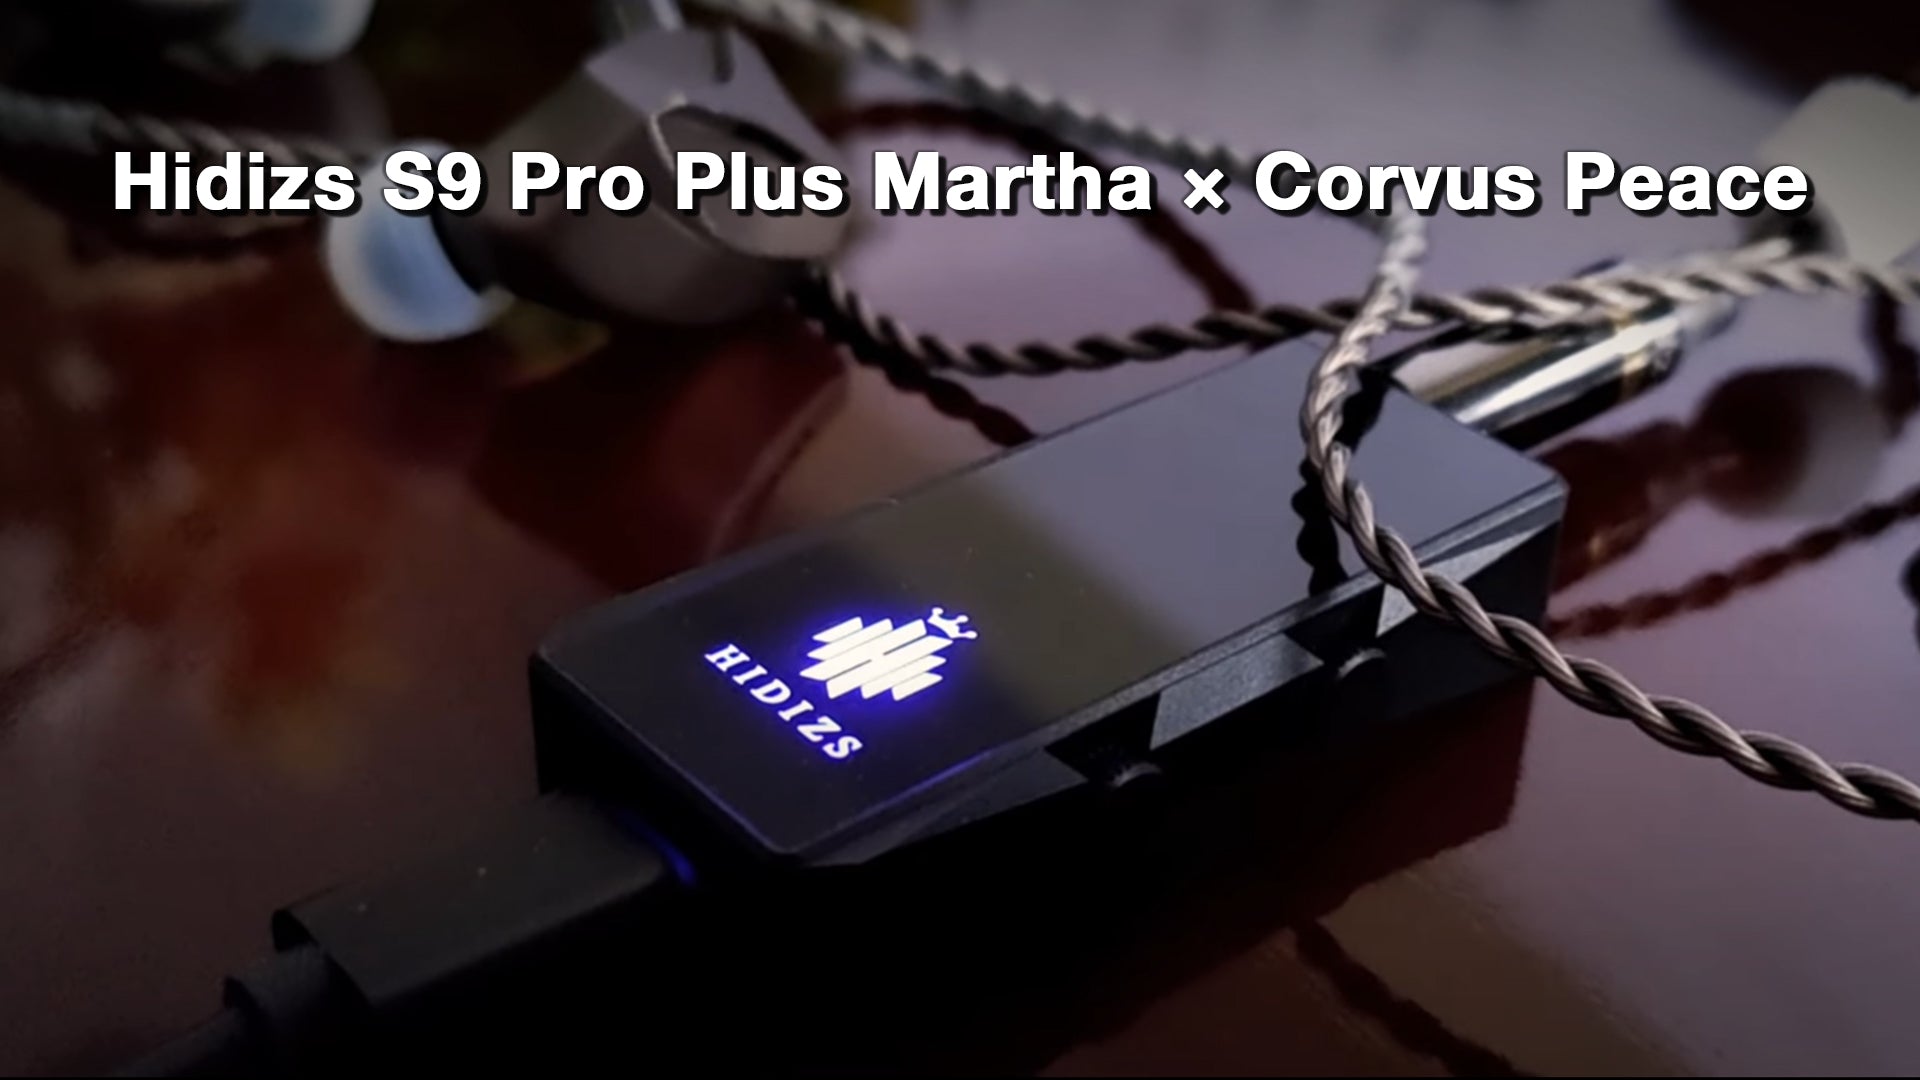 Hidizs S9 Pro Plus Martha Review - Corvus Peace